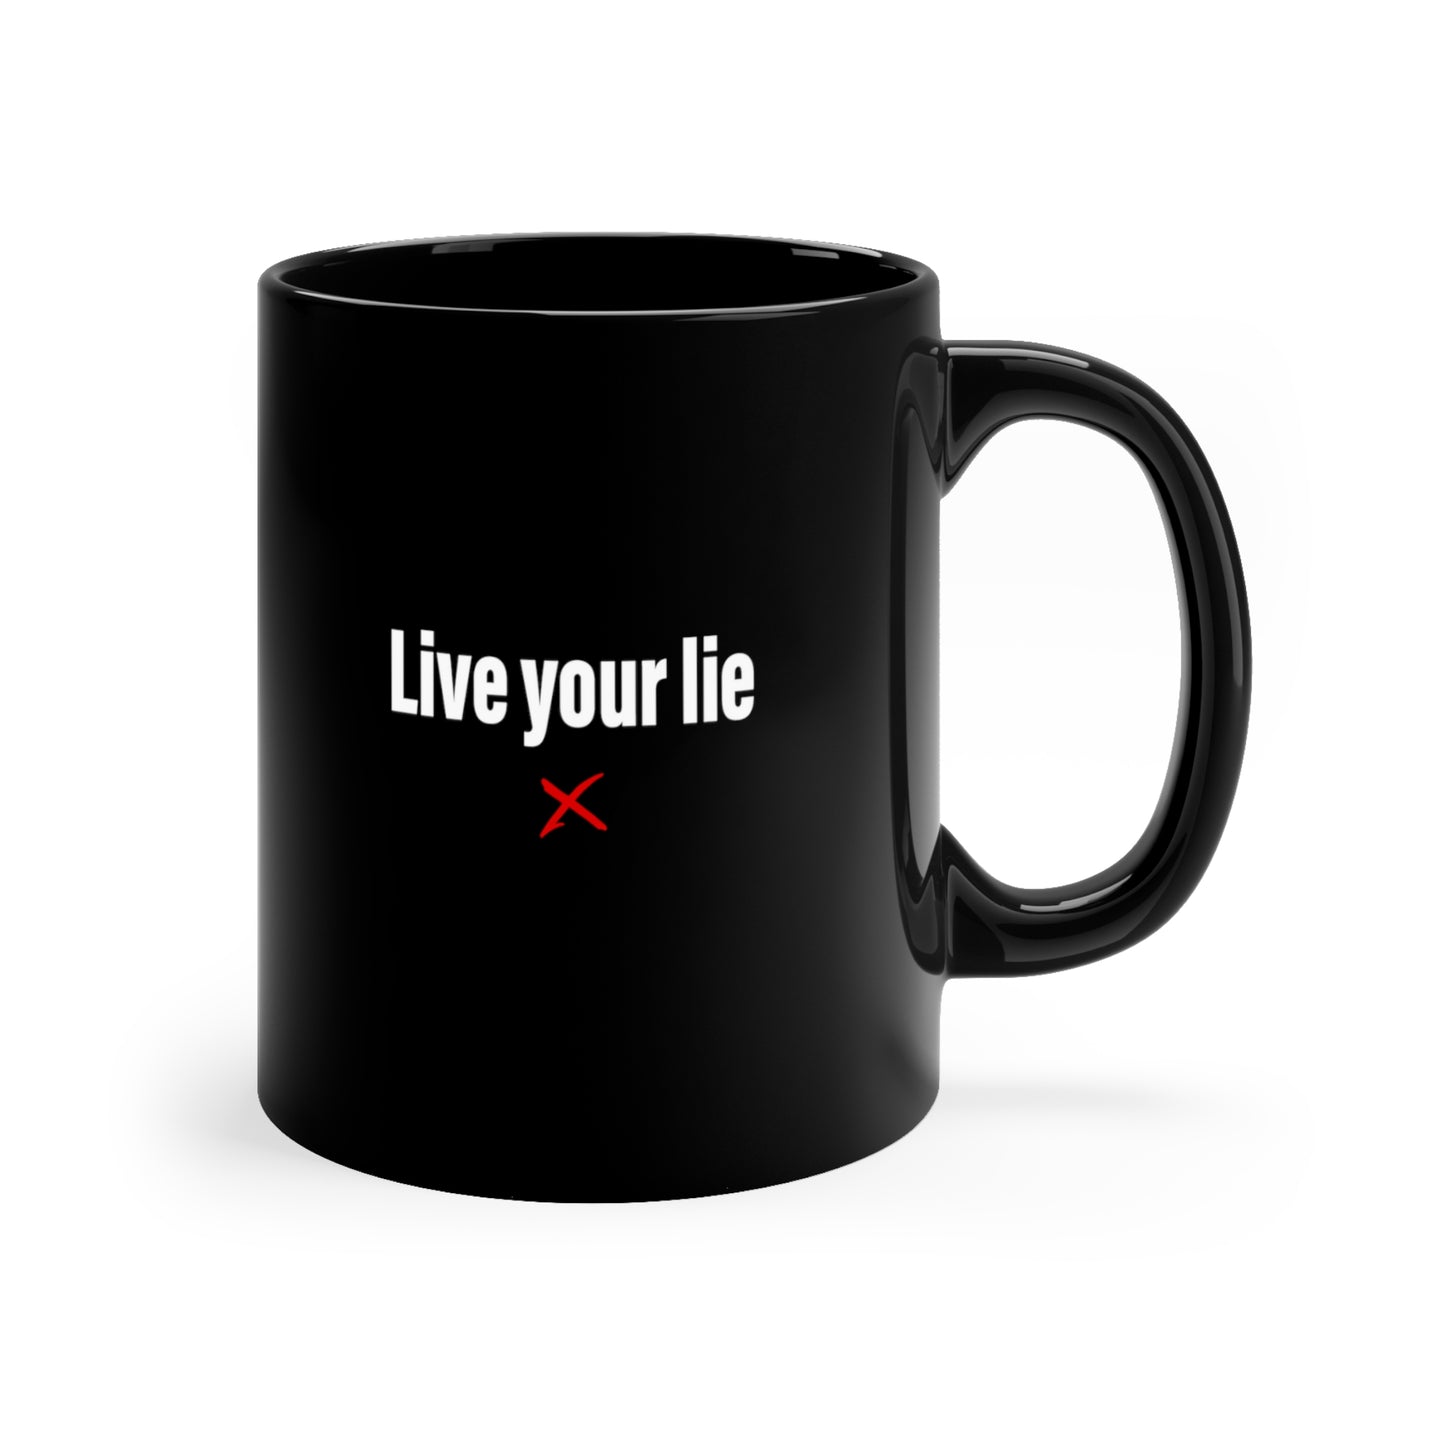 Live your lie - Mug